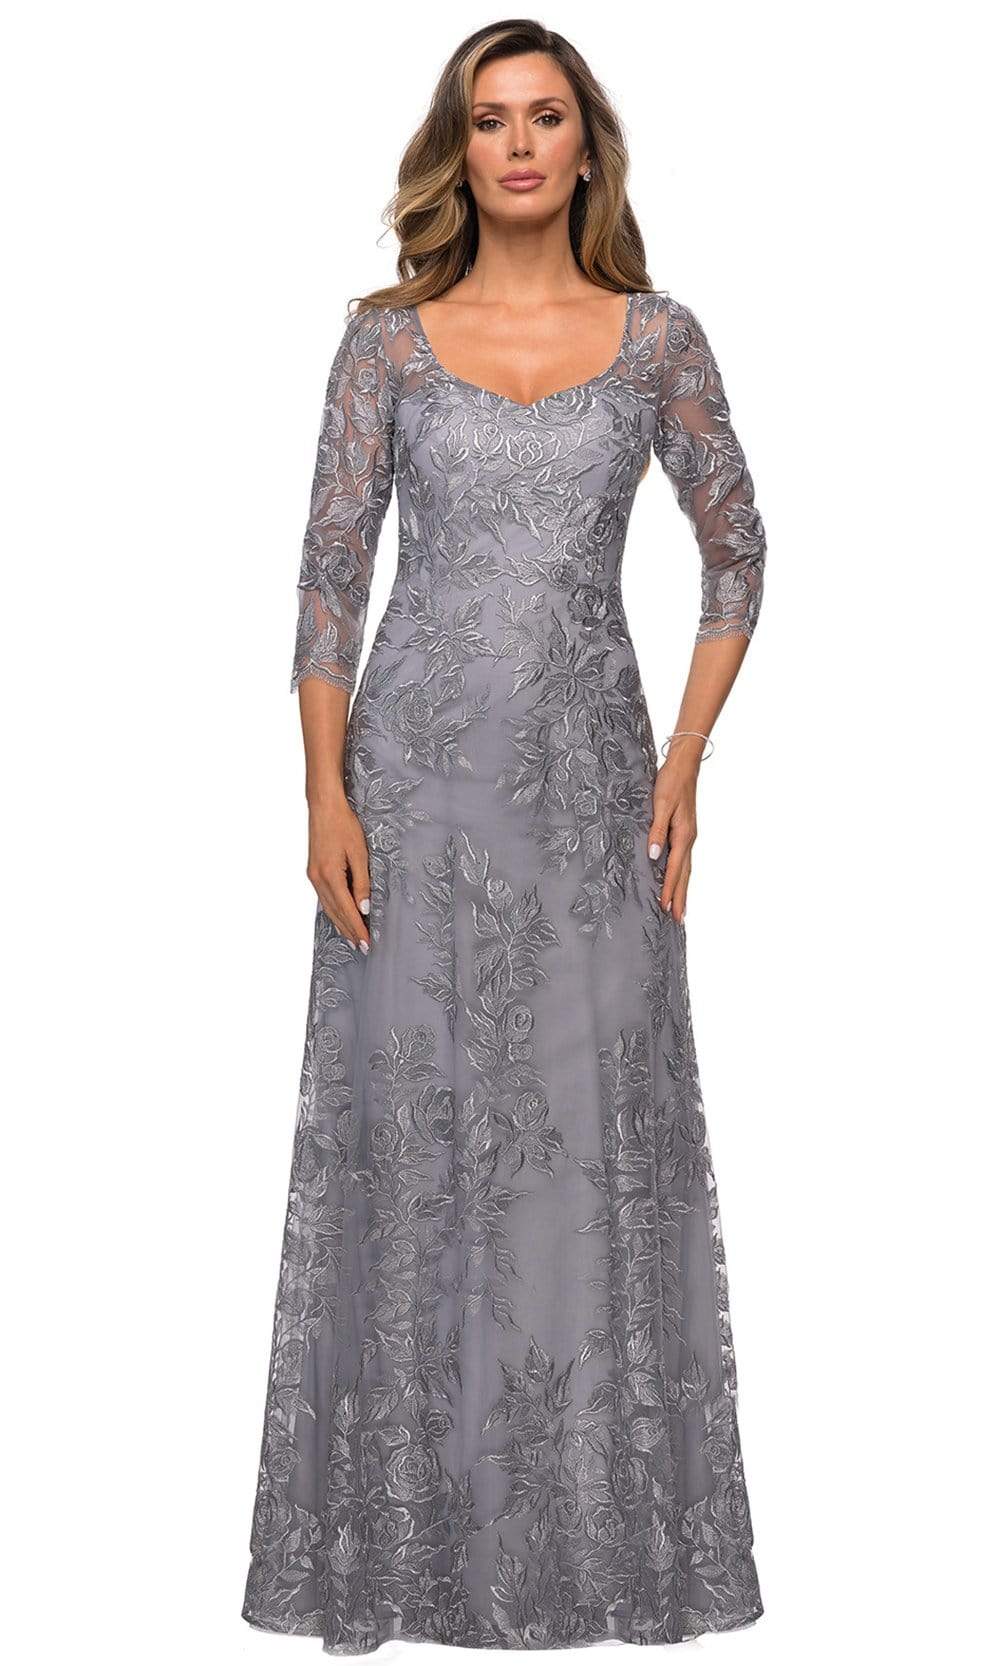 La Femme - 28053 Lace V Neck A-line Dress
